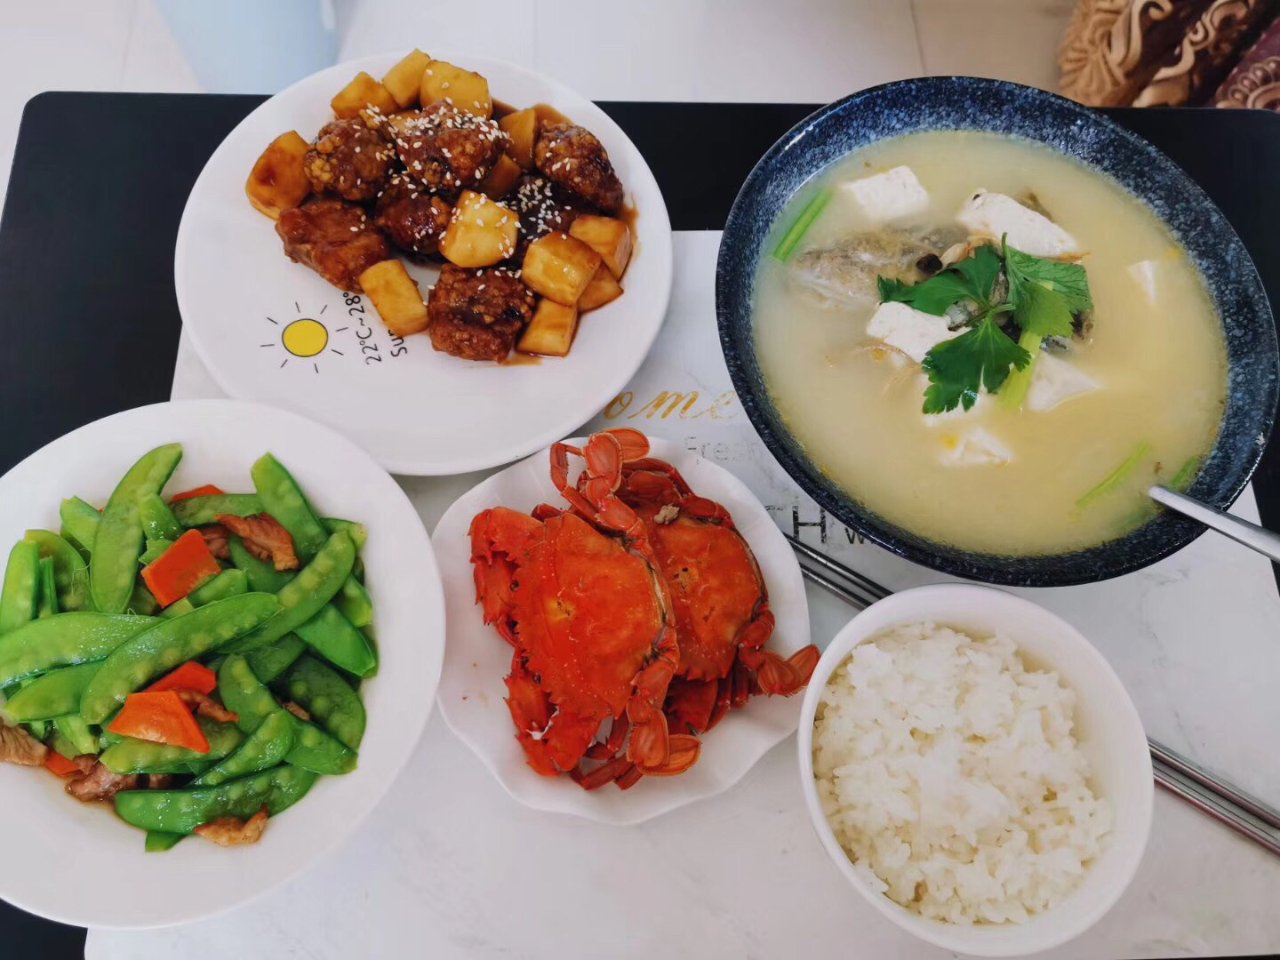 豆腐鲈鱼汤,烧土豆排骨,炒雪豆,清蒸螃蟹,白米饭